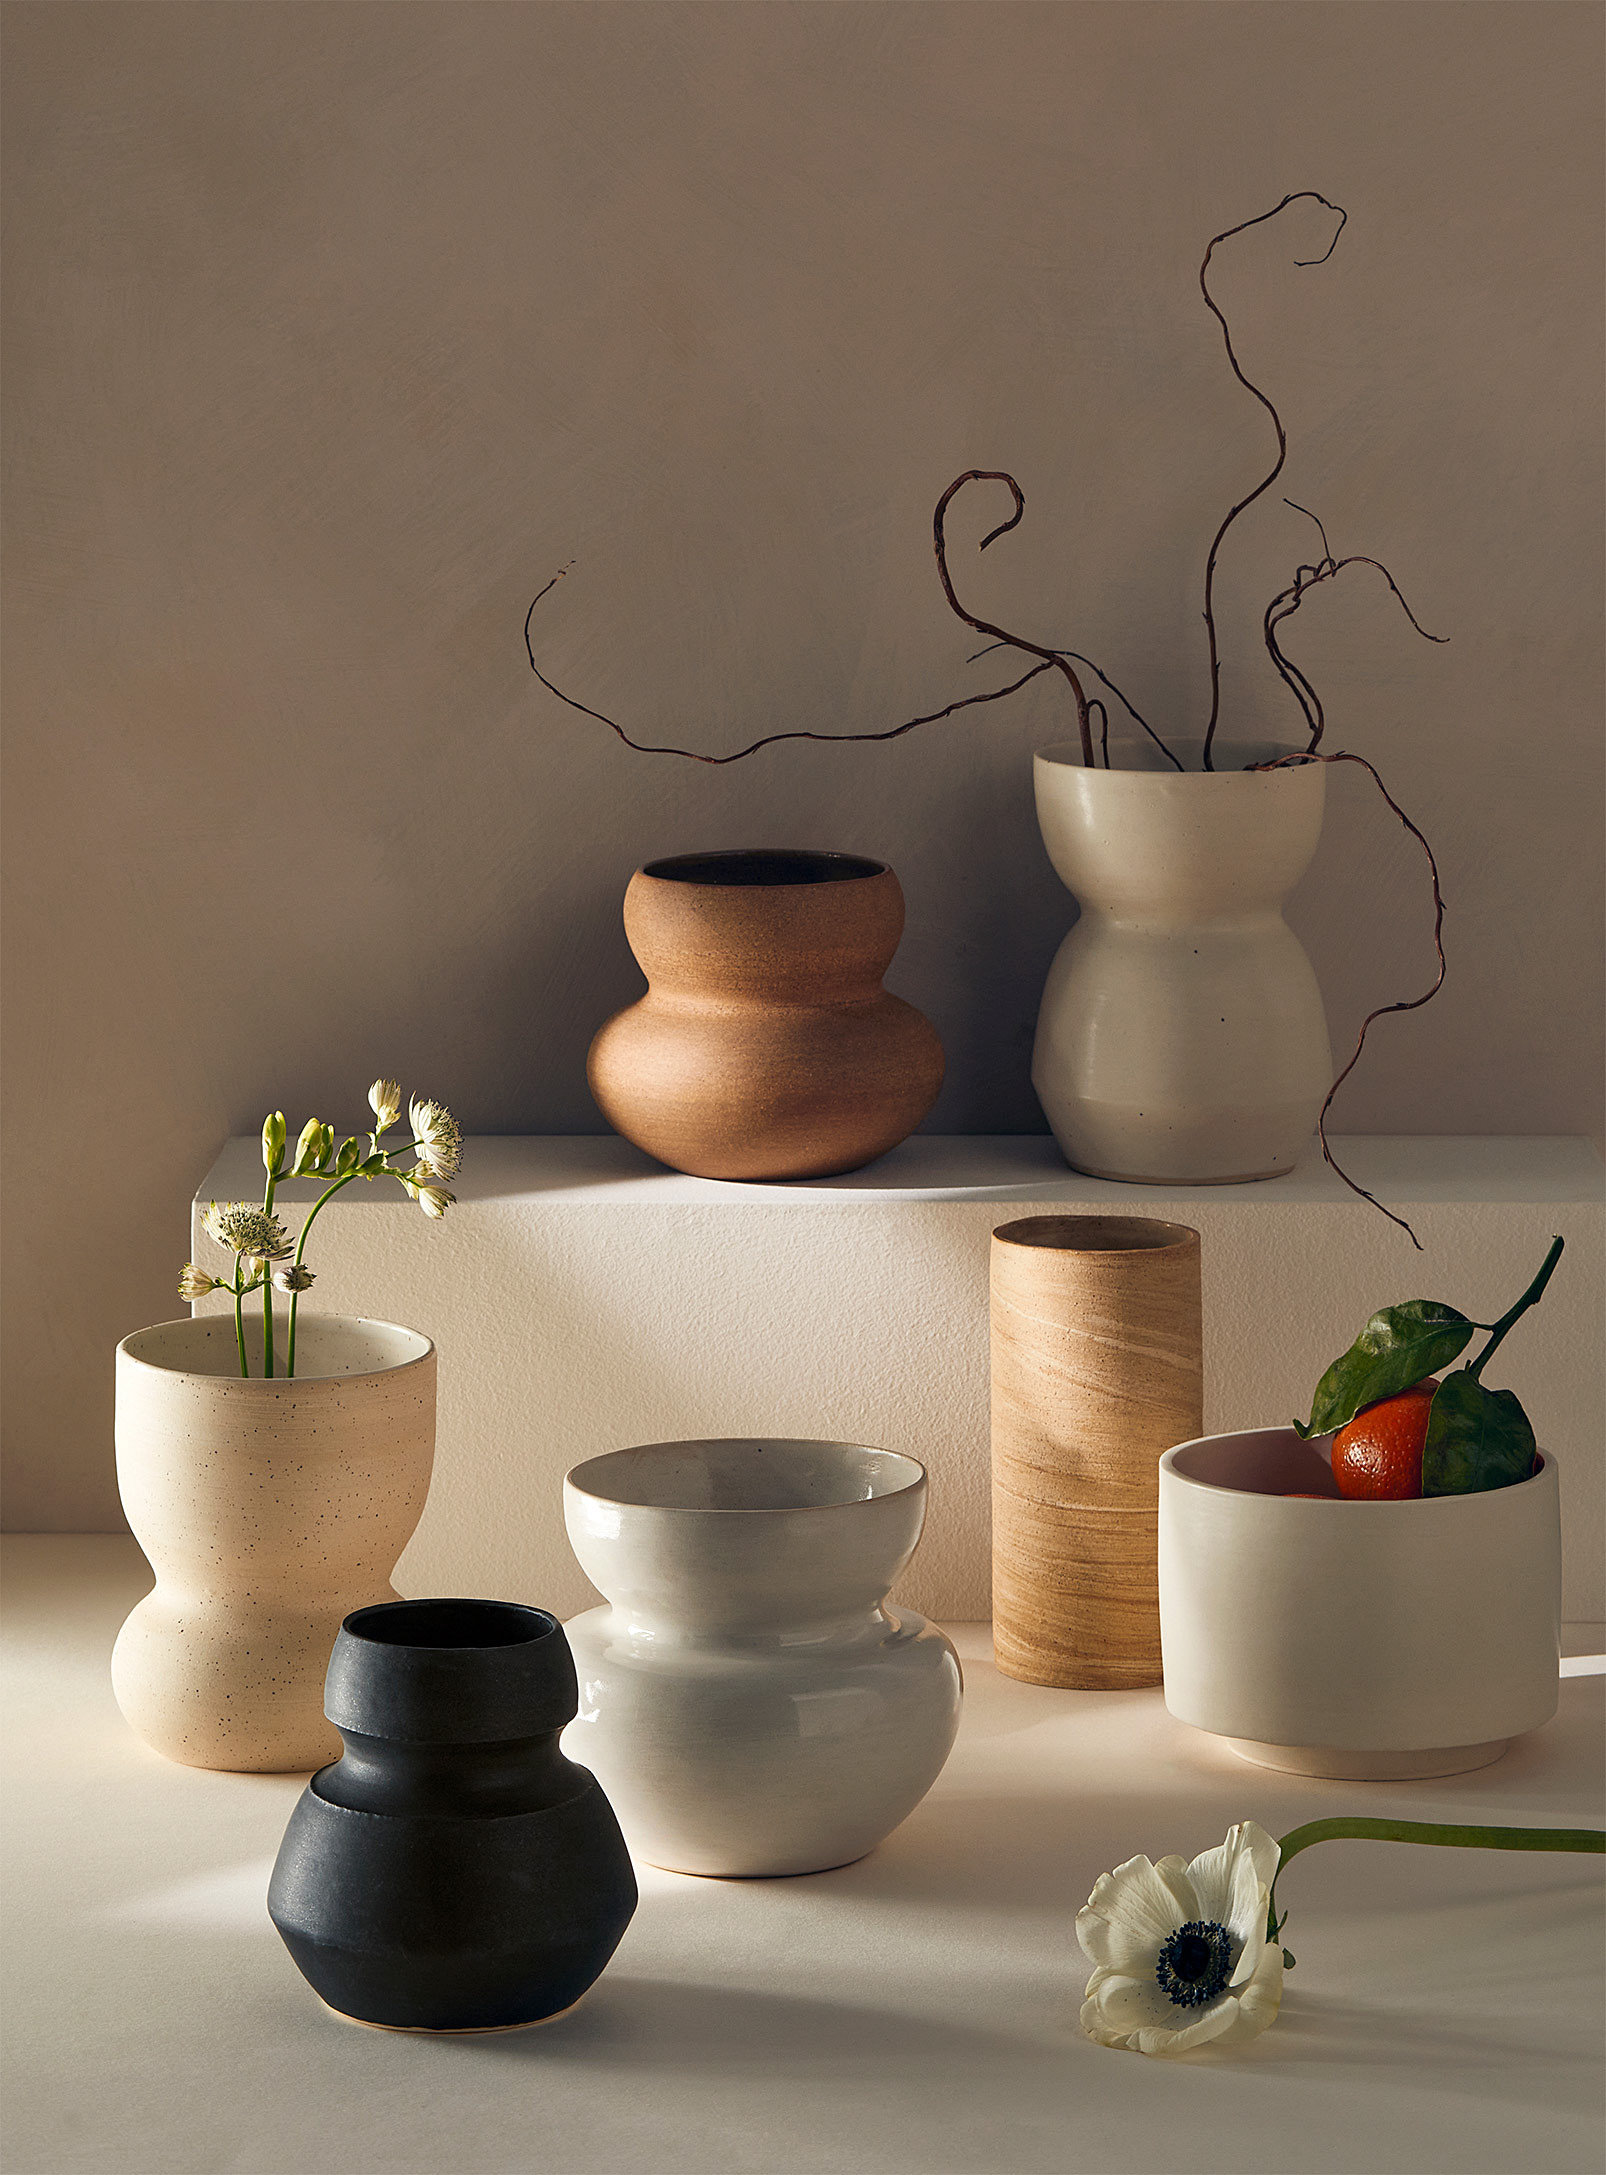 Ceramics by LJM - Le vase grès moucheté no 07 14 cm de hauteur